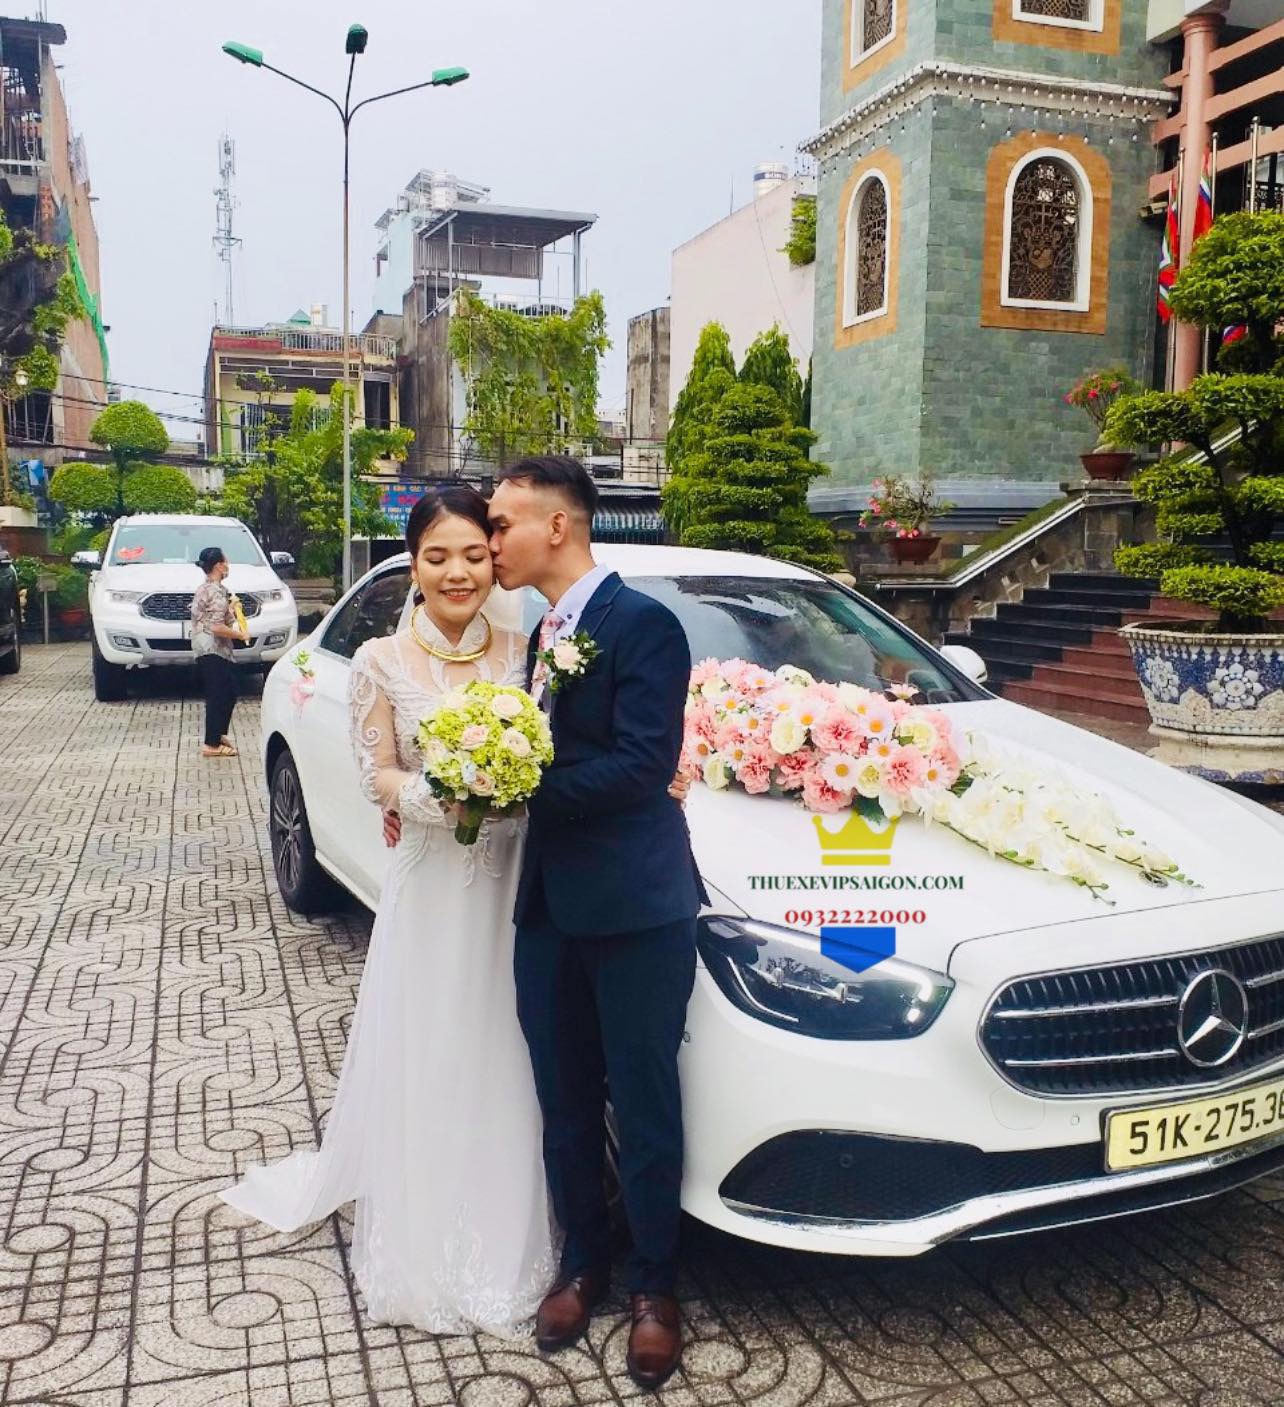 Thuexevipsaigon cho thuê xe cưới Mercedes ngày 13/6/2022